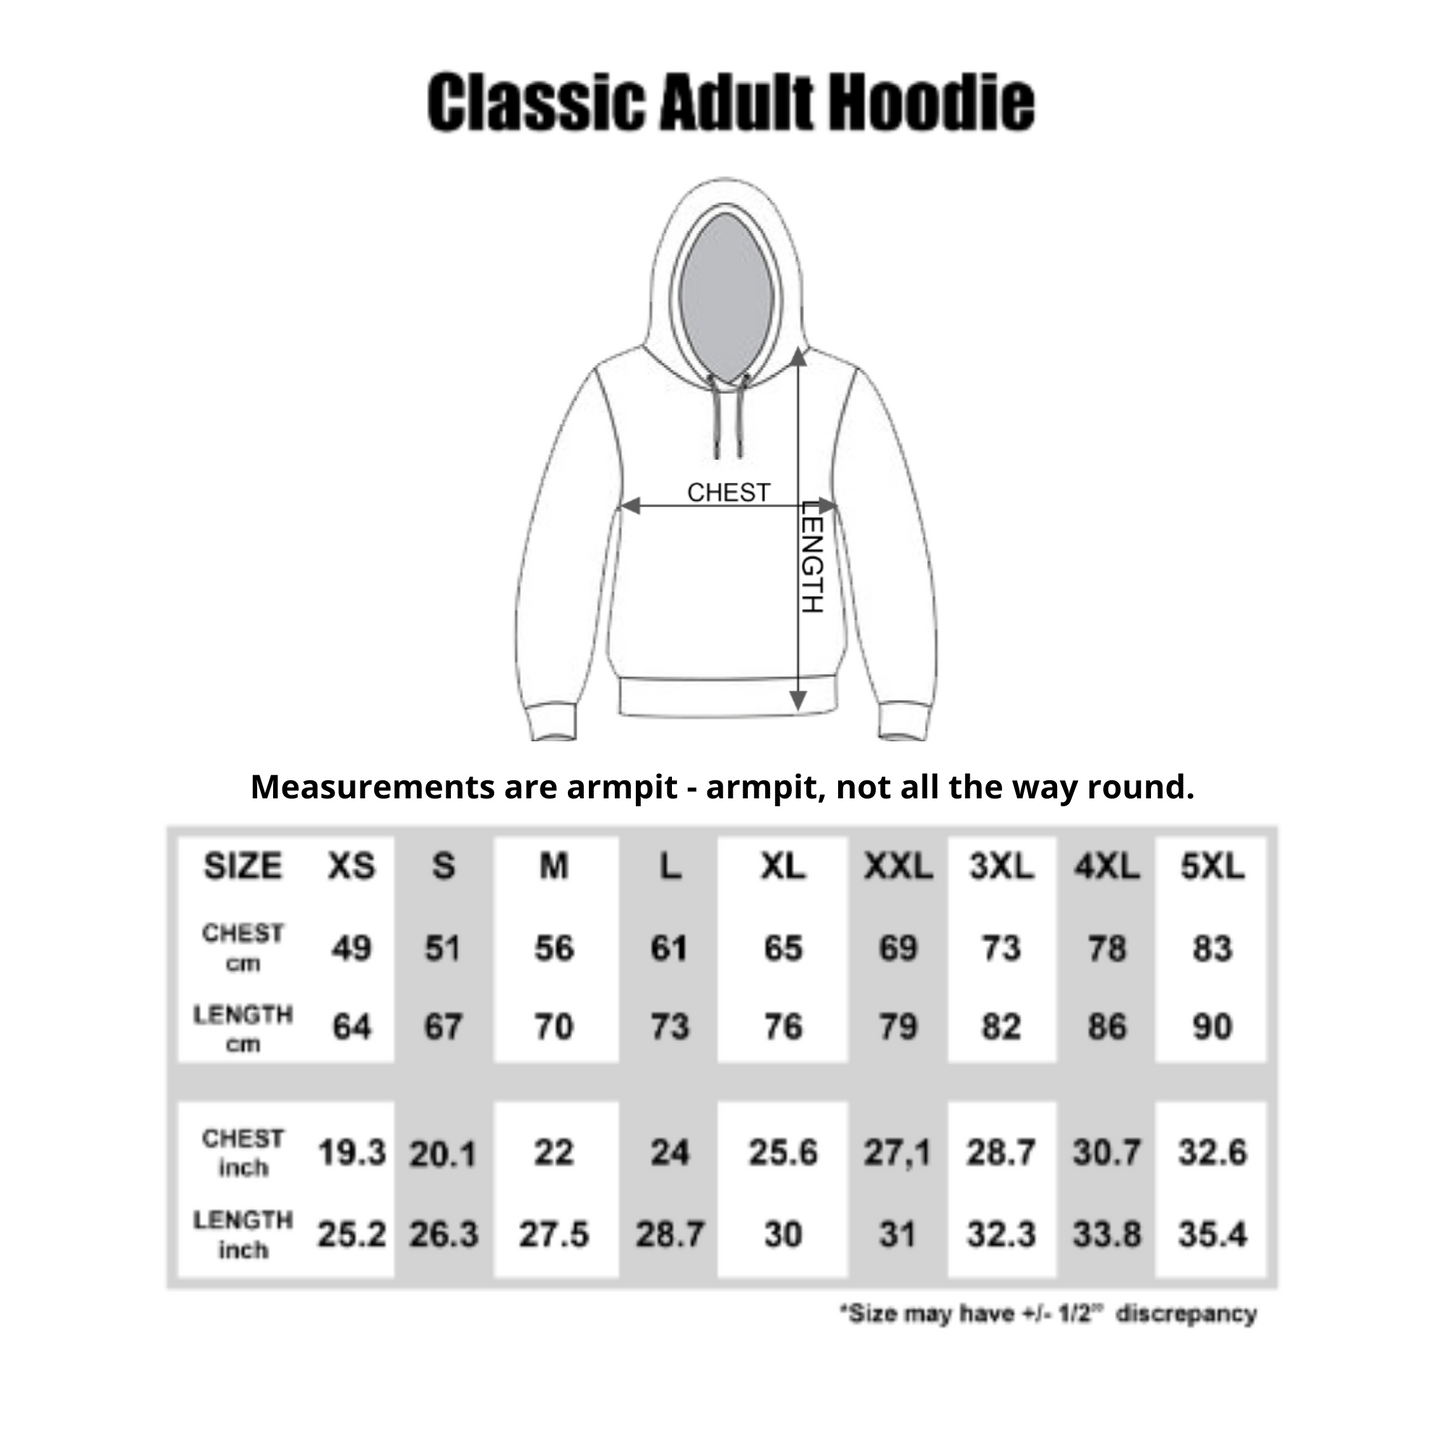 Rocking this Dadbod - Men's Hooded Sweatshirt